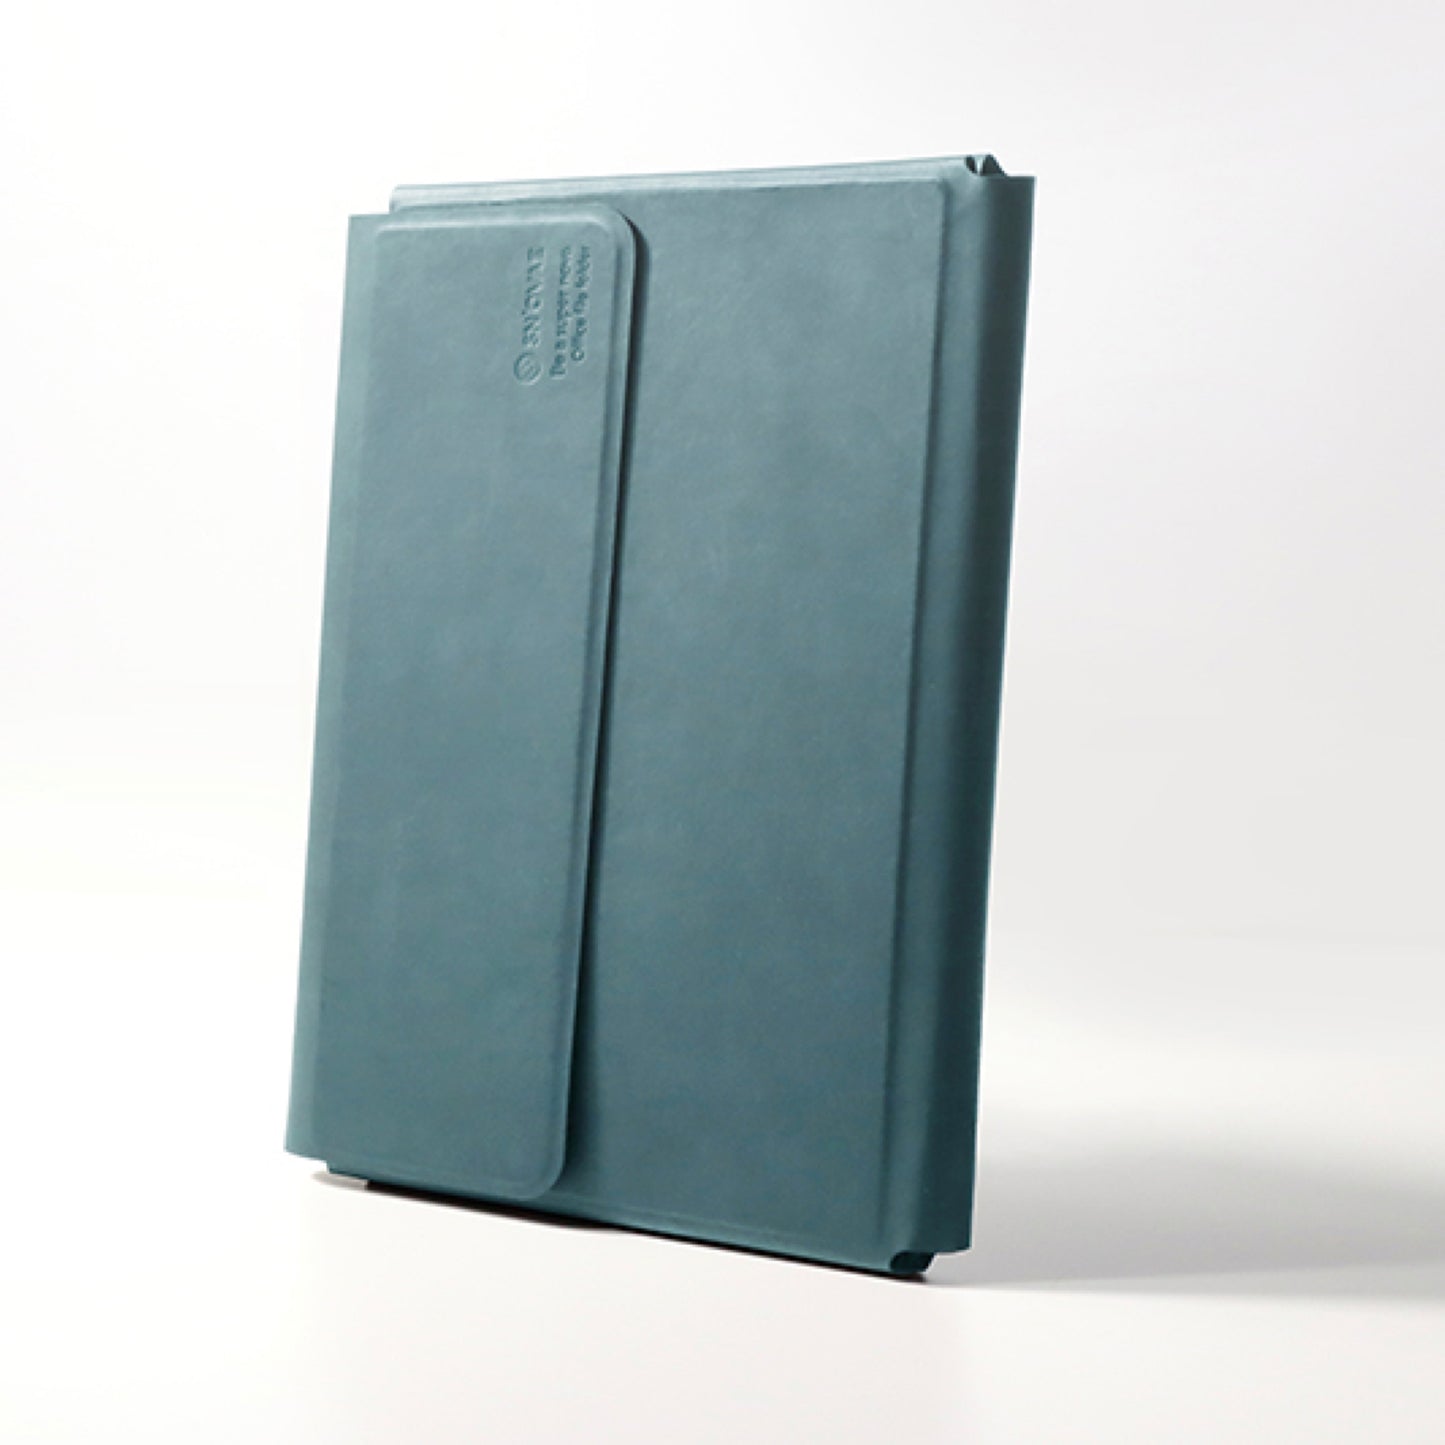 A4サイズの磁力で組み合わせるノートフォルダ「A4 office folder」